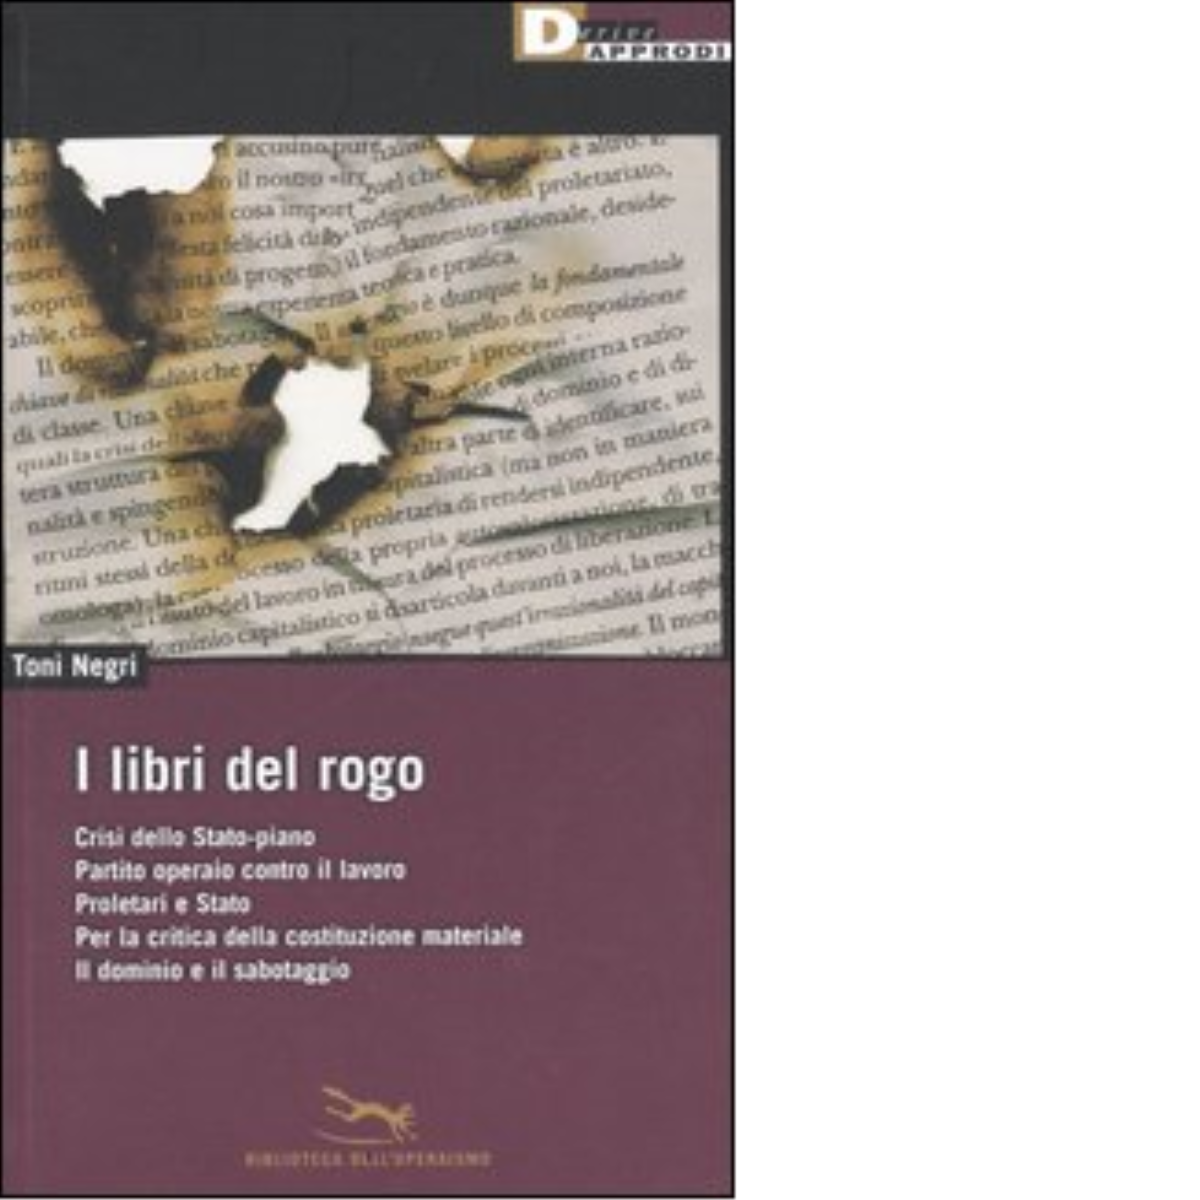 I LIBRI DEL ROGO. di TONI NEGRI - DeriveApprodi editore, 2006 libro usato